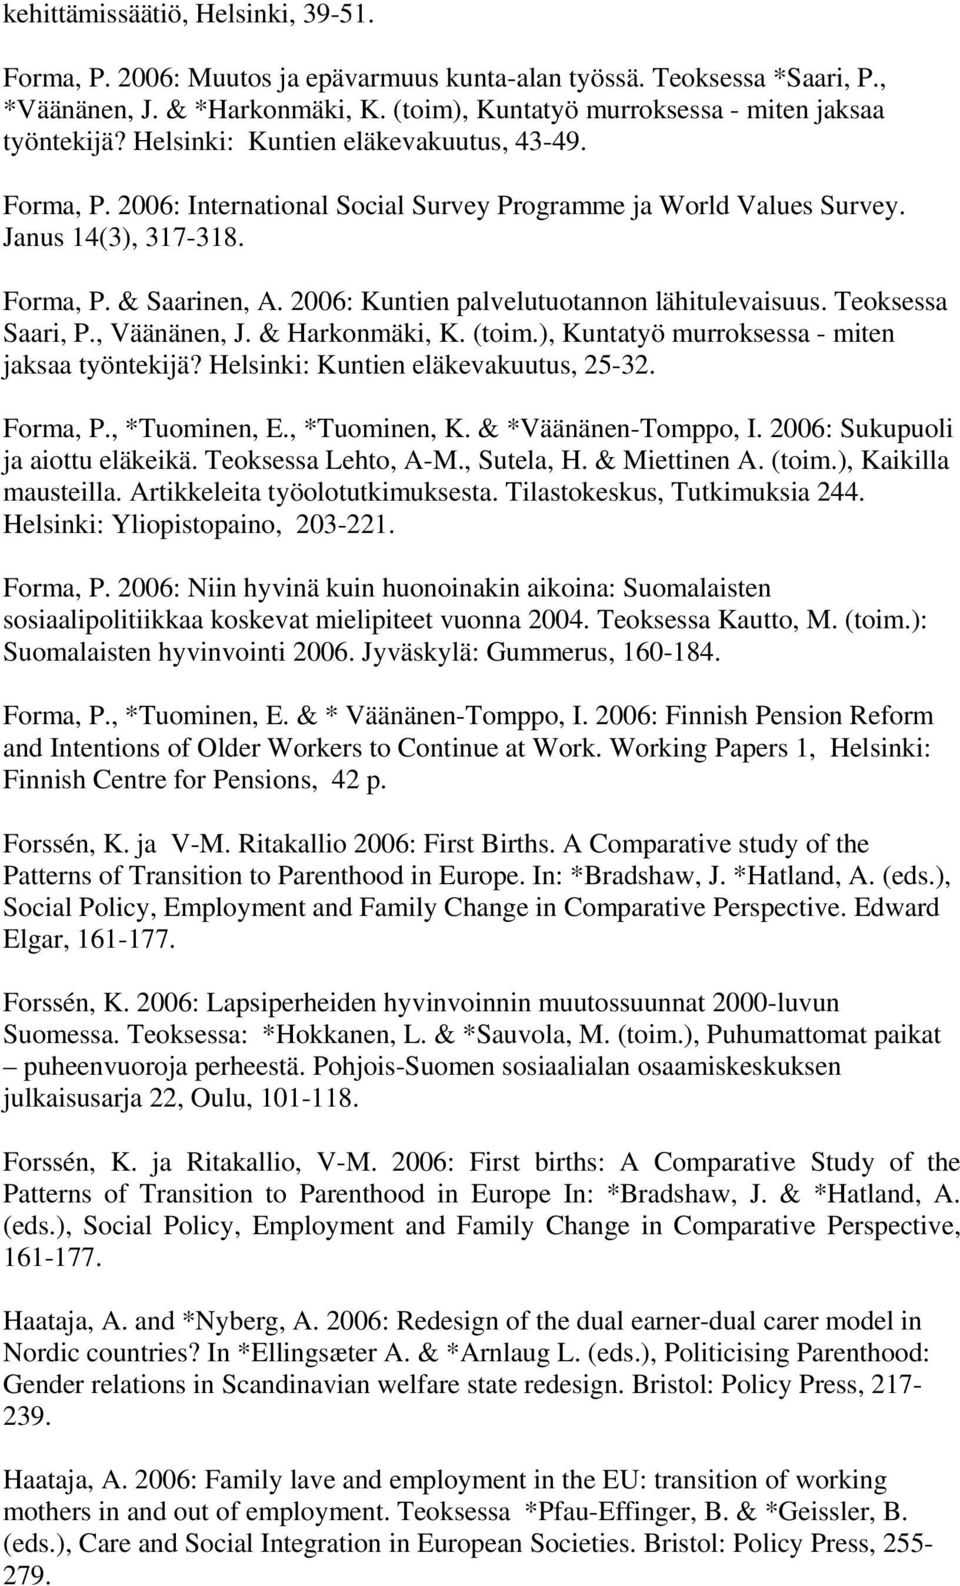 2006: Kuntien palvelutuotannon lähitulevaisuus. Teoksessa Saari, P., Väänänen, J. & Harkonmäki, K. (toim.), Kuntatyö murroksessa - miten jaksaa työntekijä? Helsinki: Kuntien eläkevakuutus, 25-32.